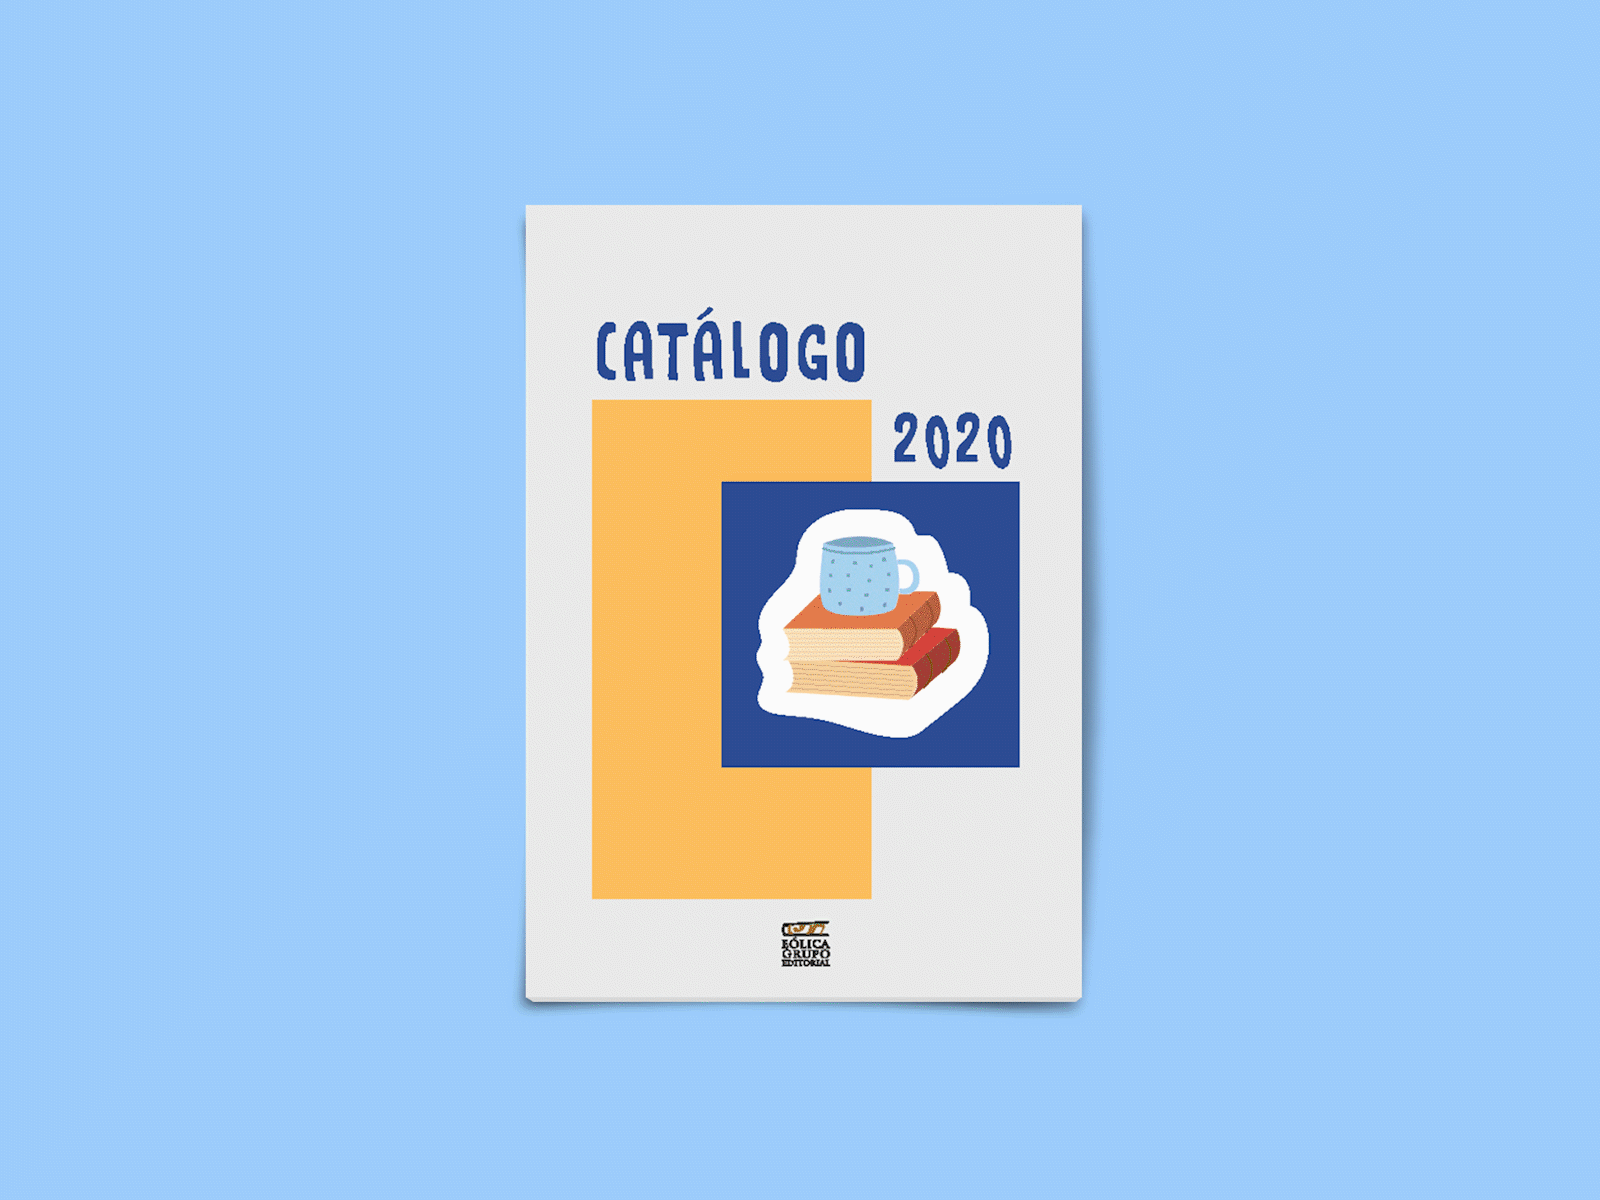 Catálogo 2020 - Editorial design art catalogue catalogue design design digital art editorial editorial art editorial design product product design